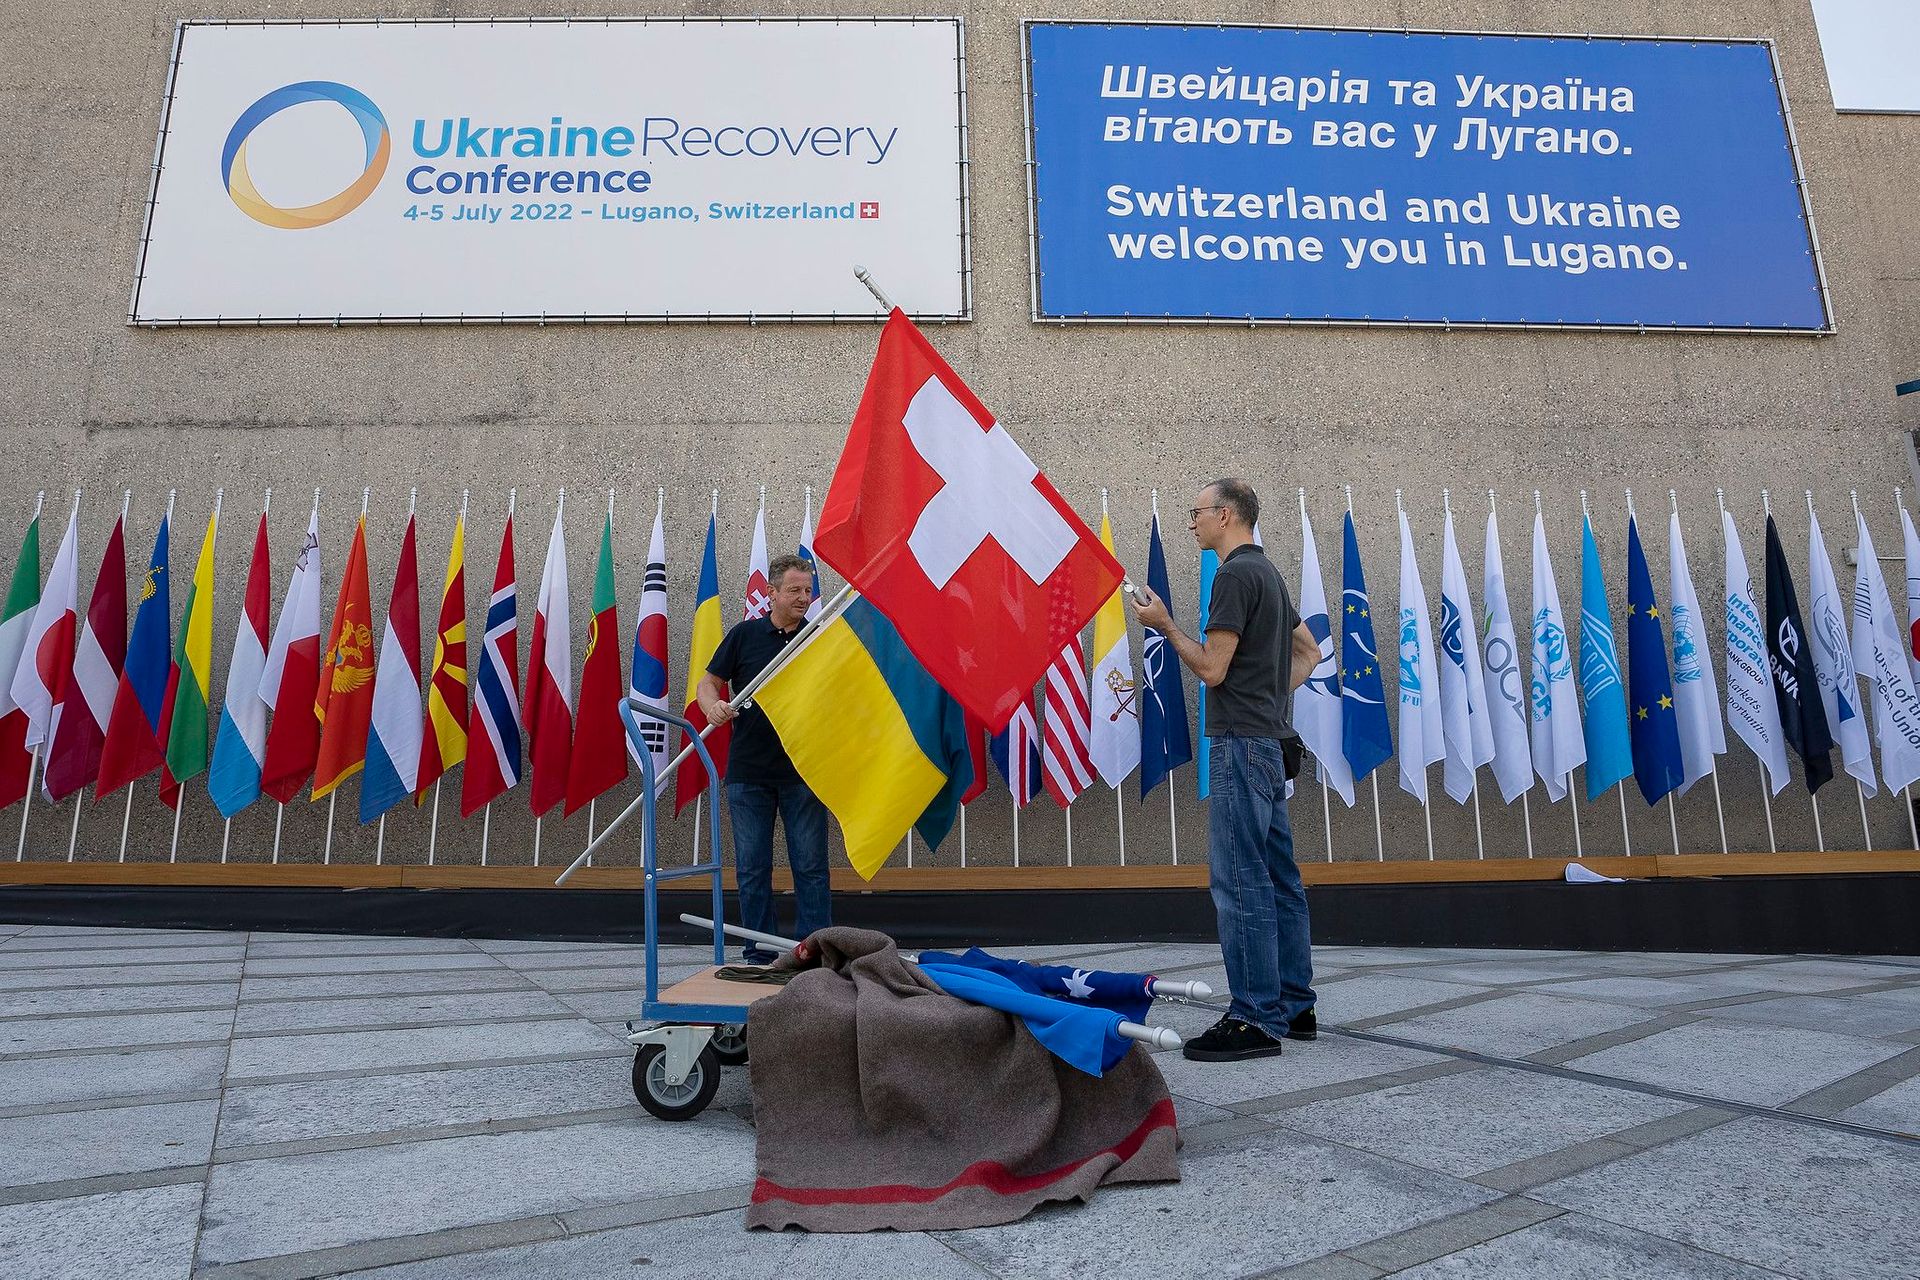 La “Ukraine Recovery Conference” del 4 e 5 luglio 2022 a Lugano